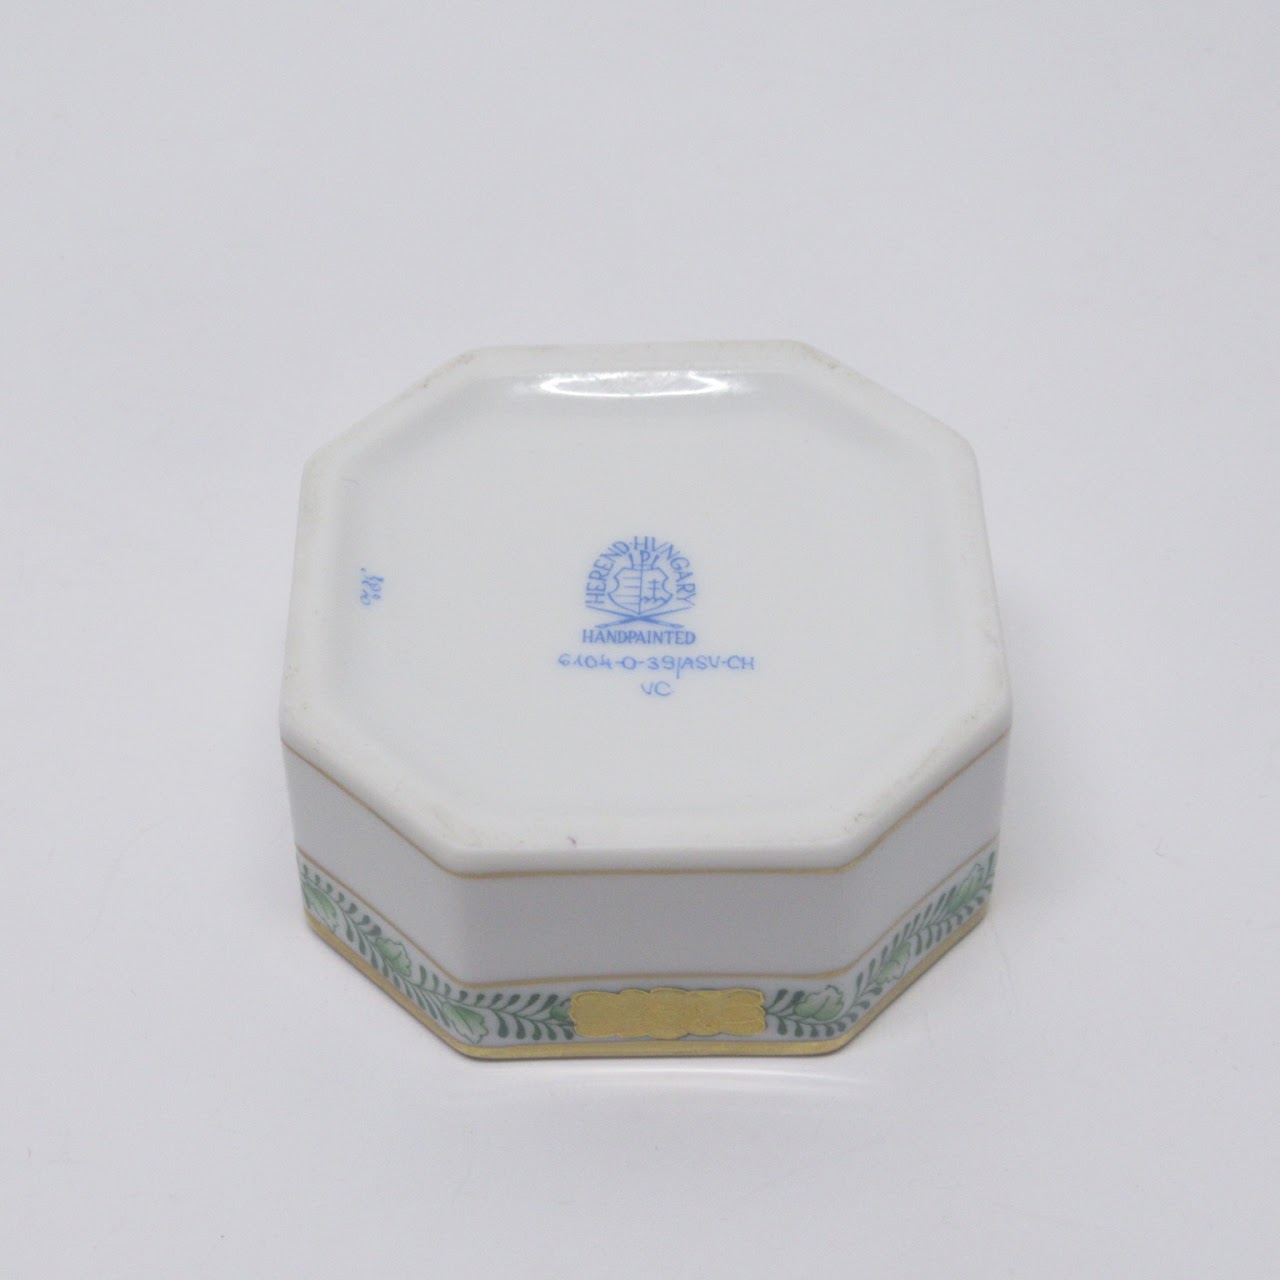 Herend Porcelain Frog Lidded Box